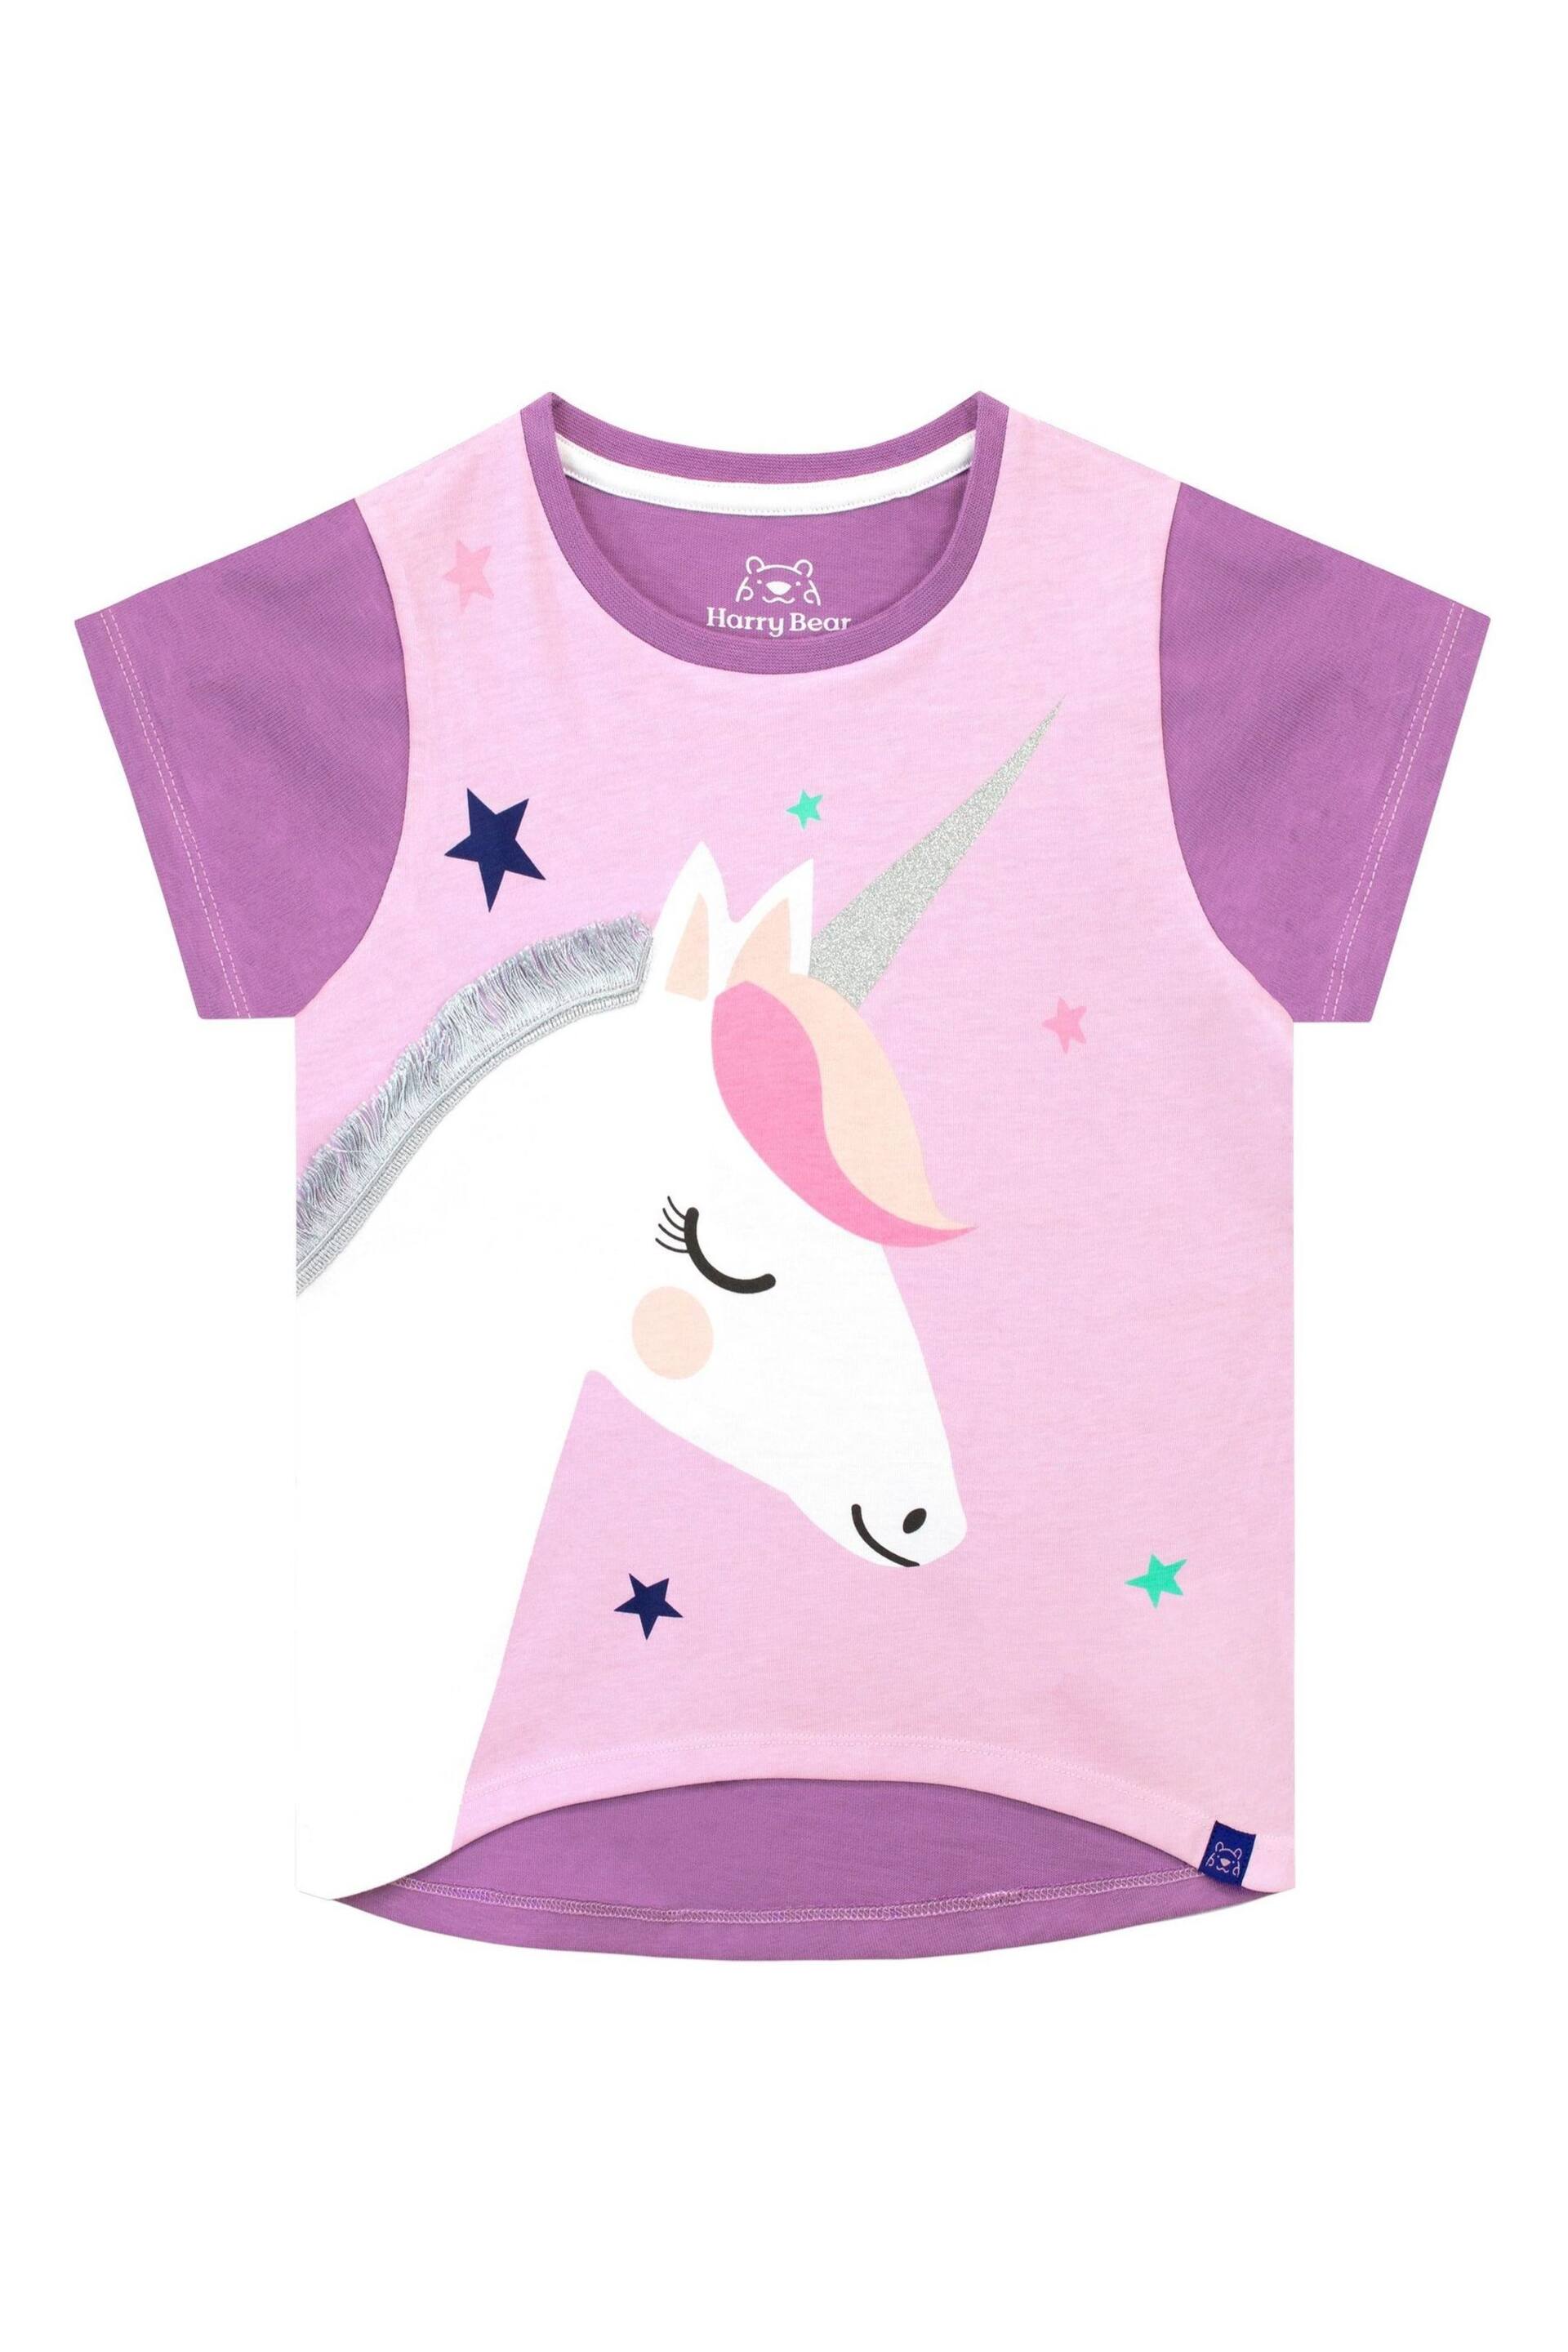 Harry Bear Purple Glitter Unicorn T-Shirt - Image 1 of 4